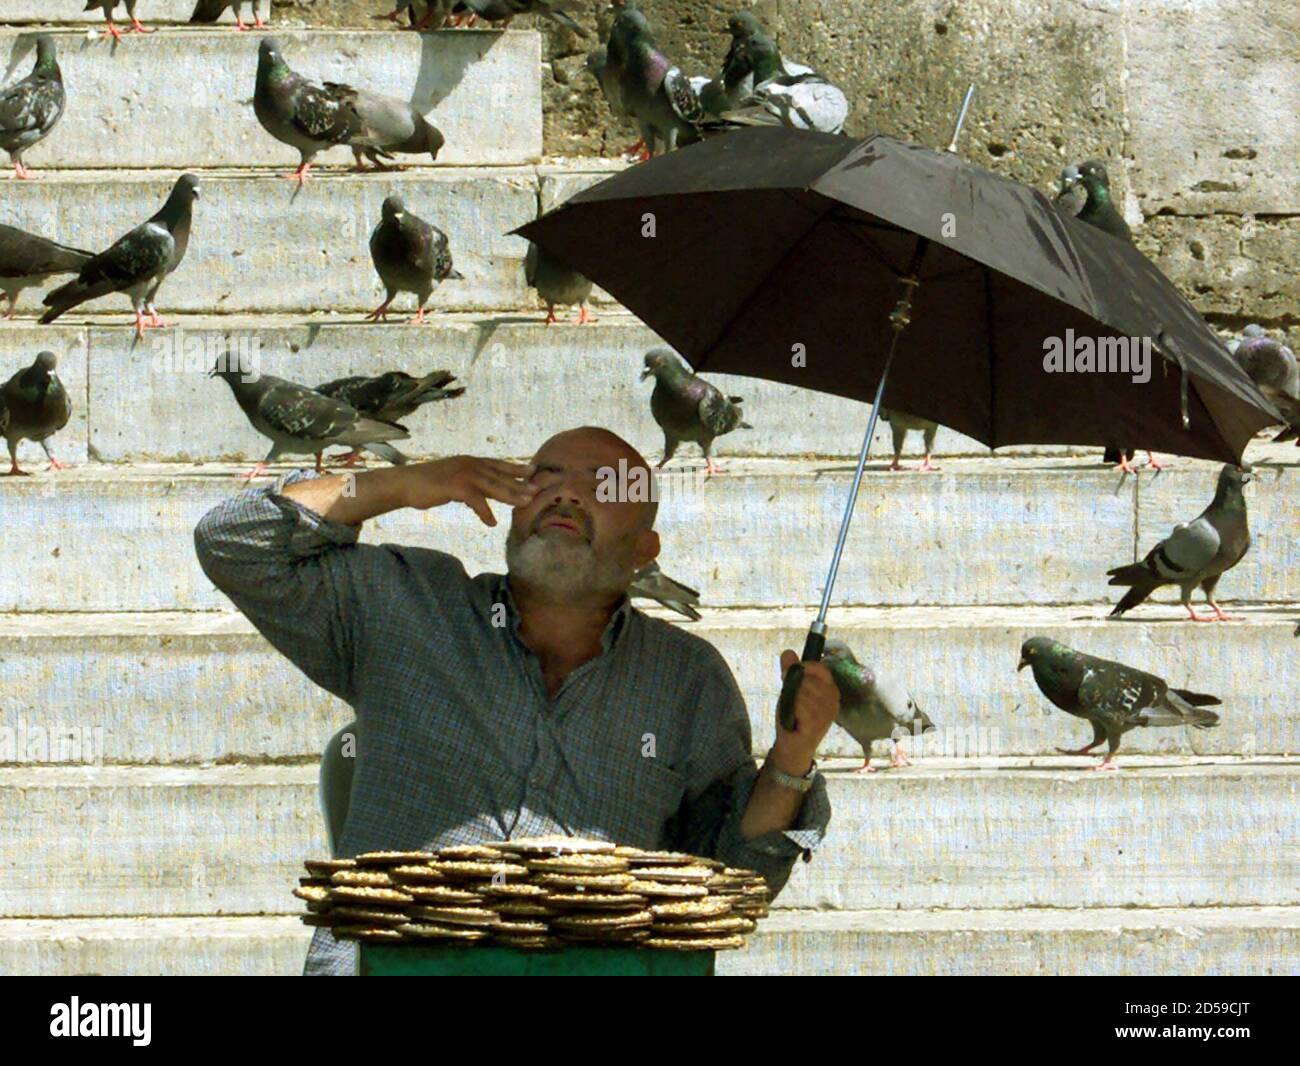 Un vendedor callejero anciano molesto por las altas temperaturas intenta  protegerse del sol bajo la sombra de un paraguas mientras vende comida para  palomas a los transeúntes, deseando alimentar a las aves